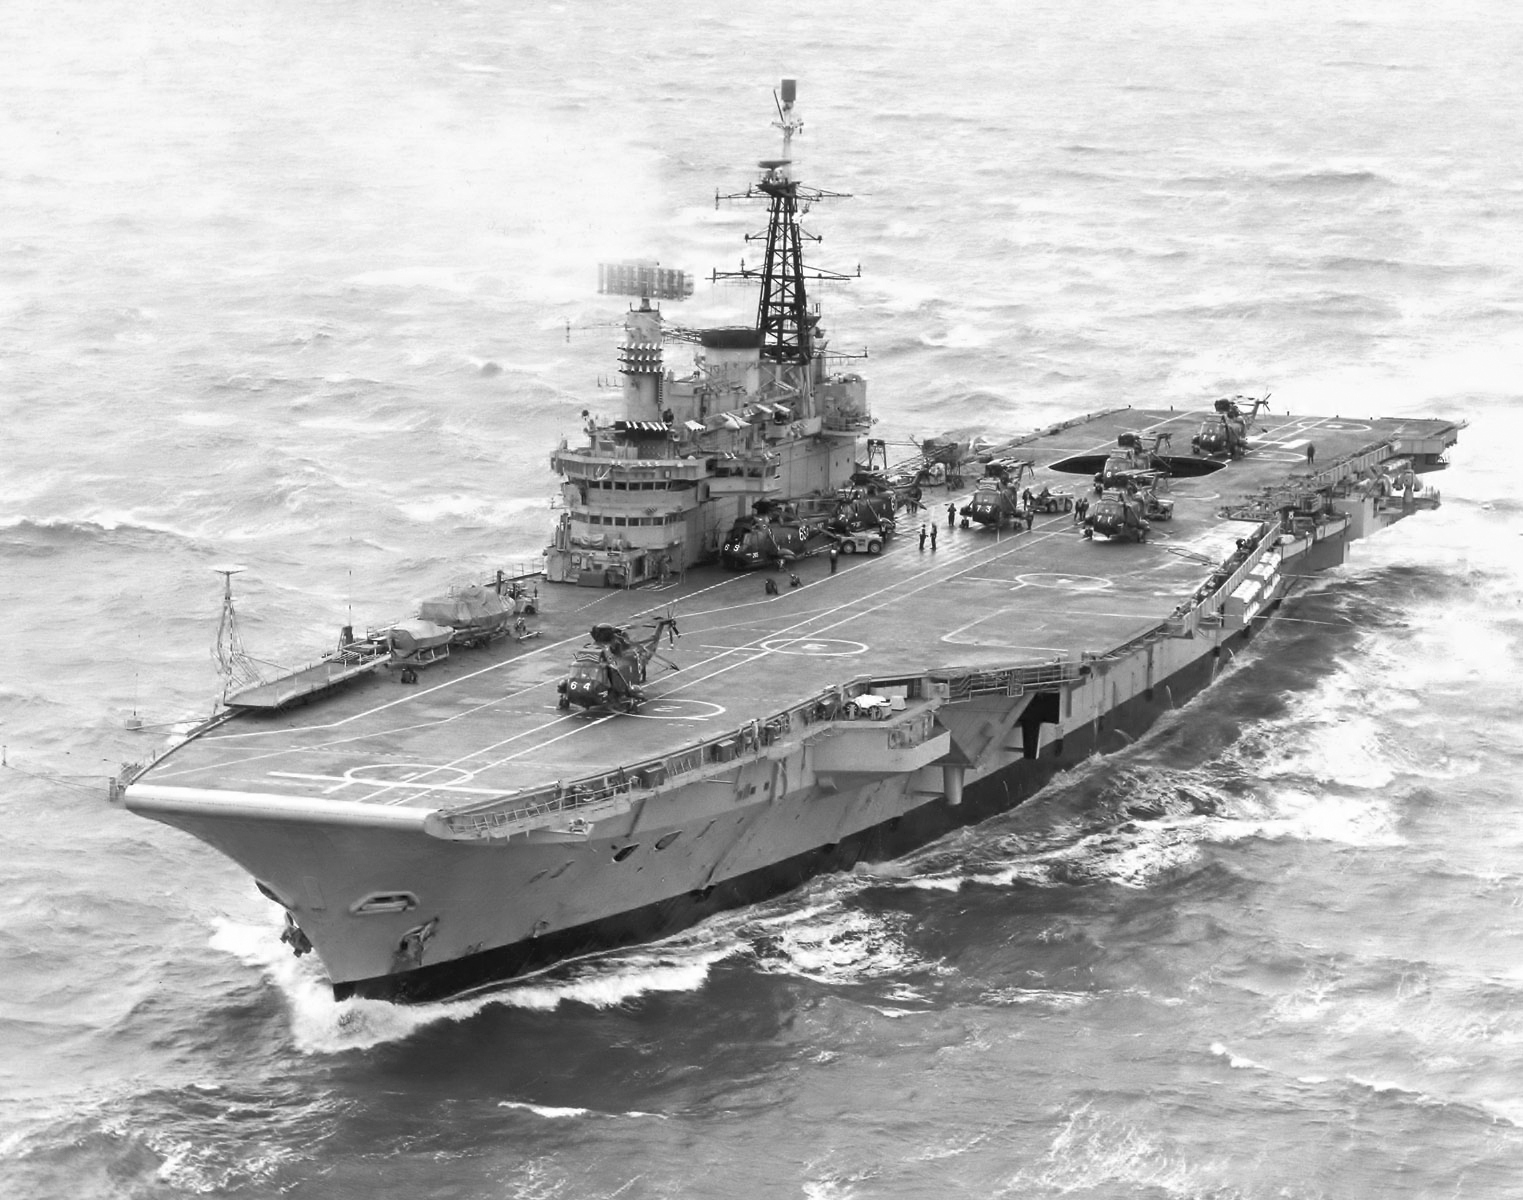 HMS Hermes.jpg